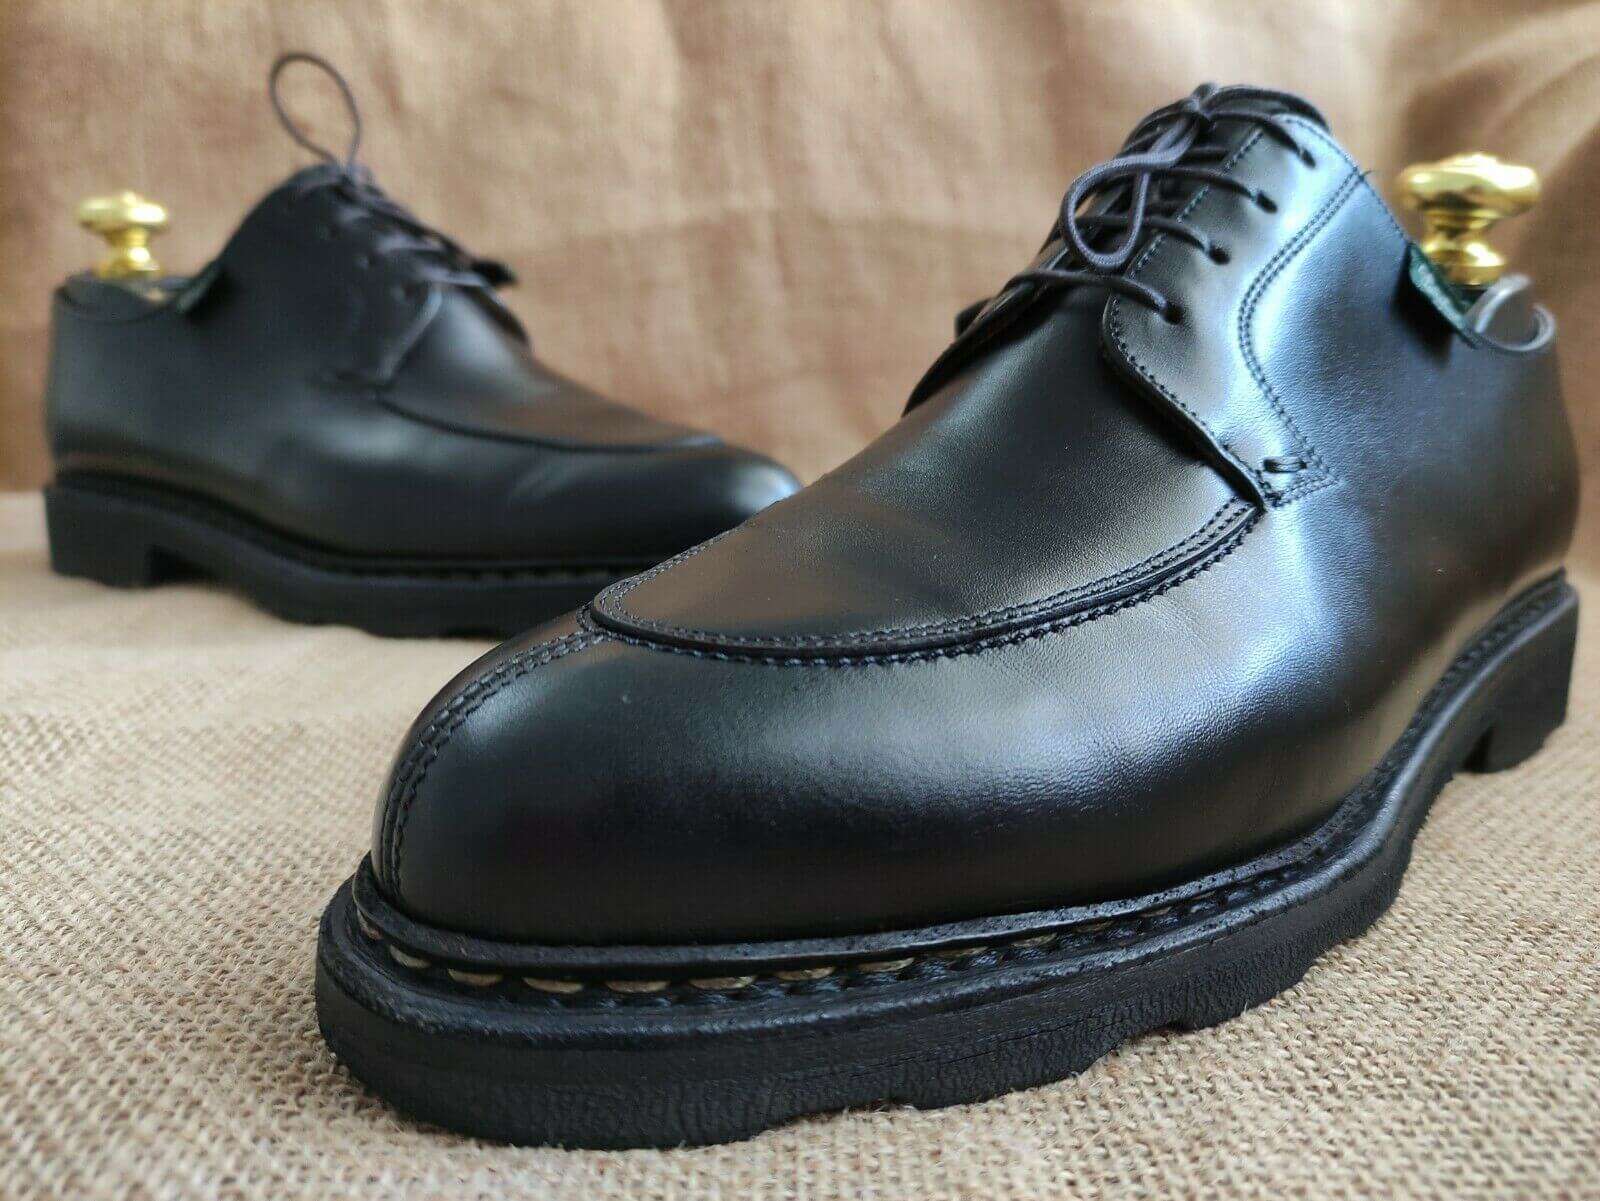 Paraboot Avignon Men's shoes - Vintage Luxury Shoes